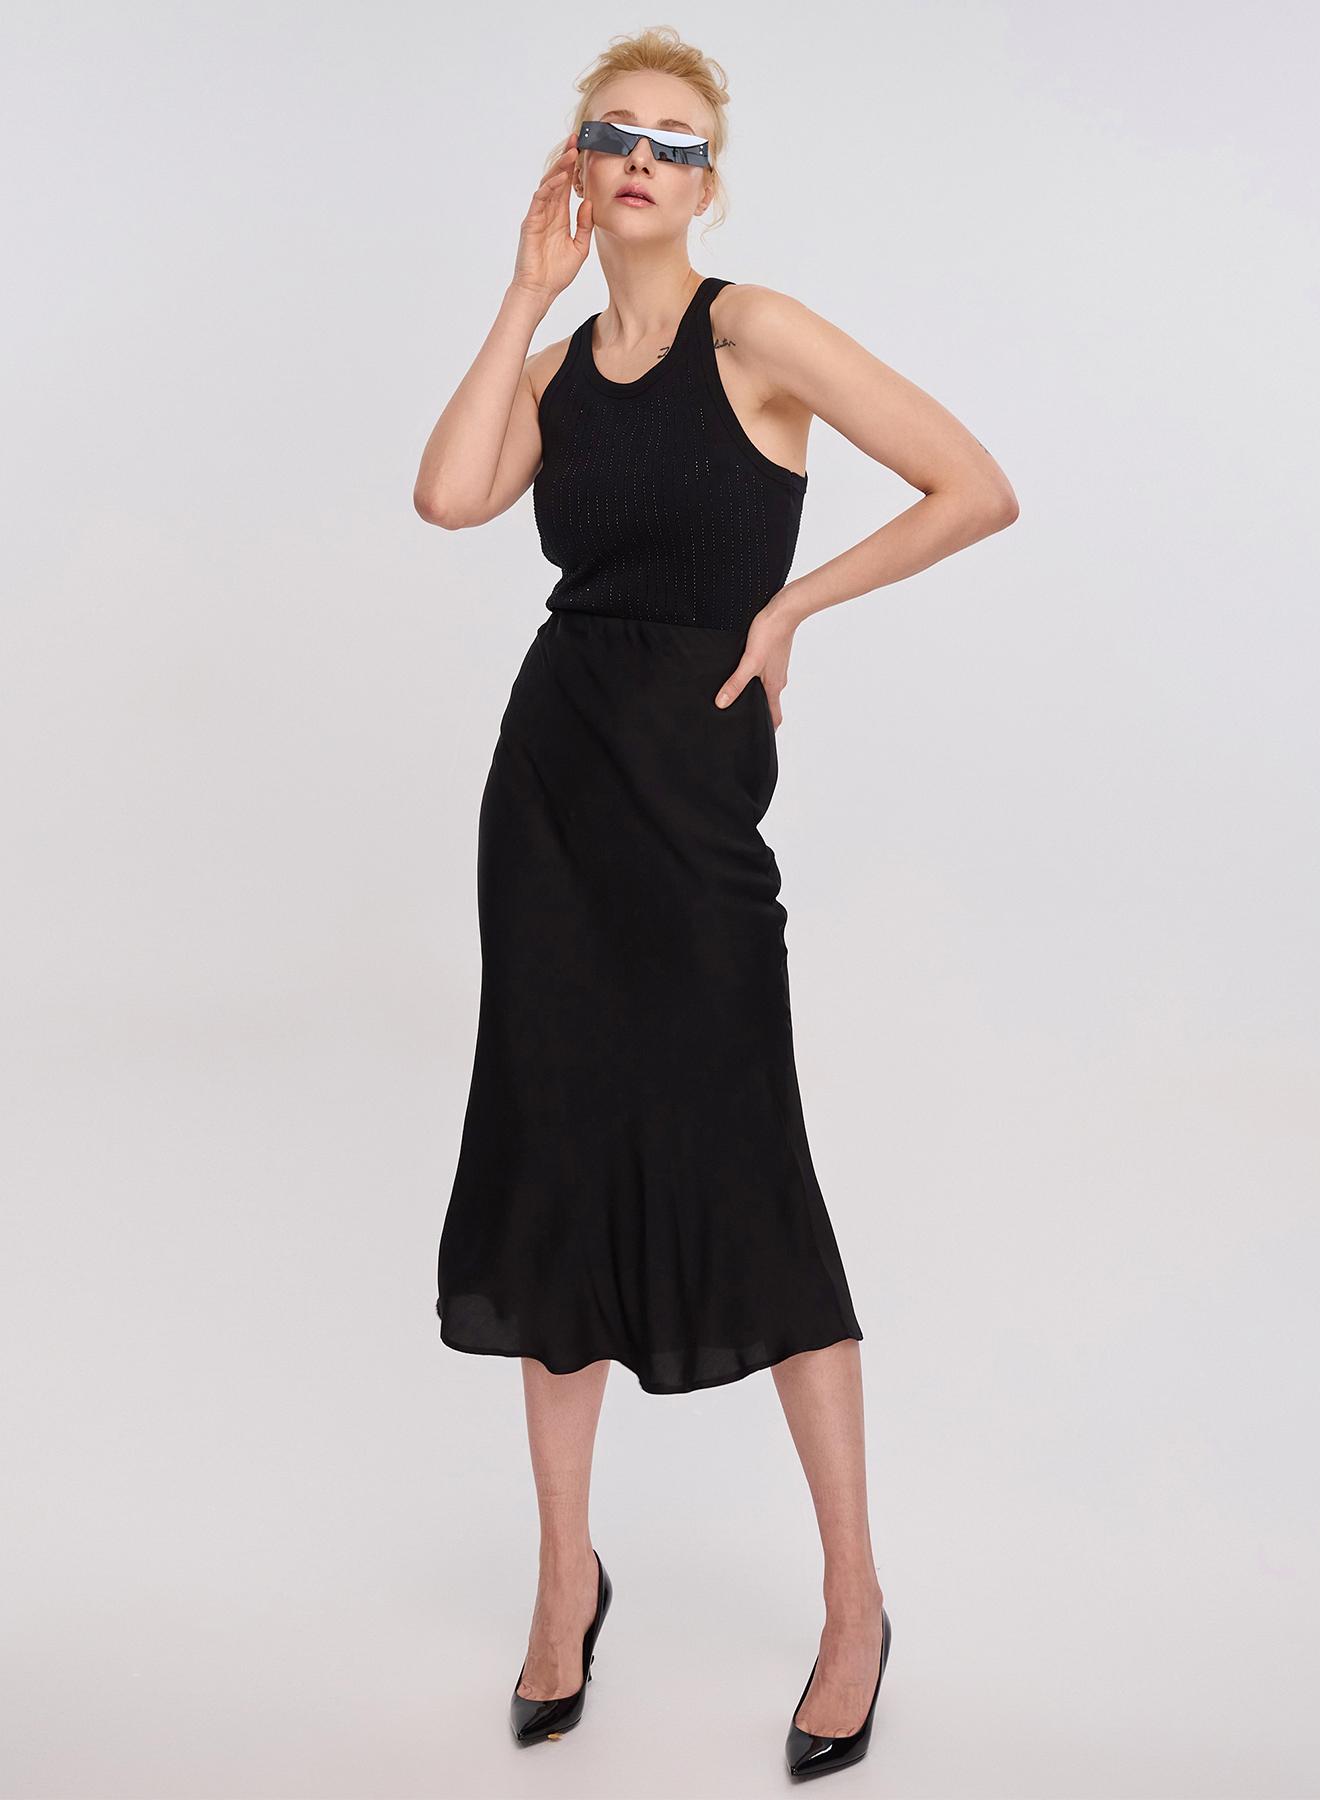 Black silky touch Skirt Clothe - 1